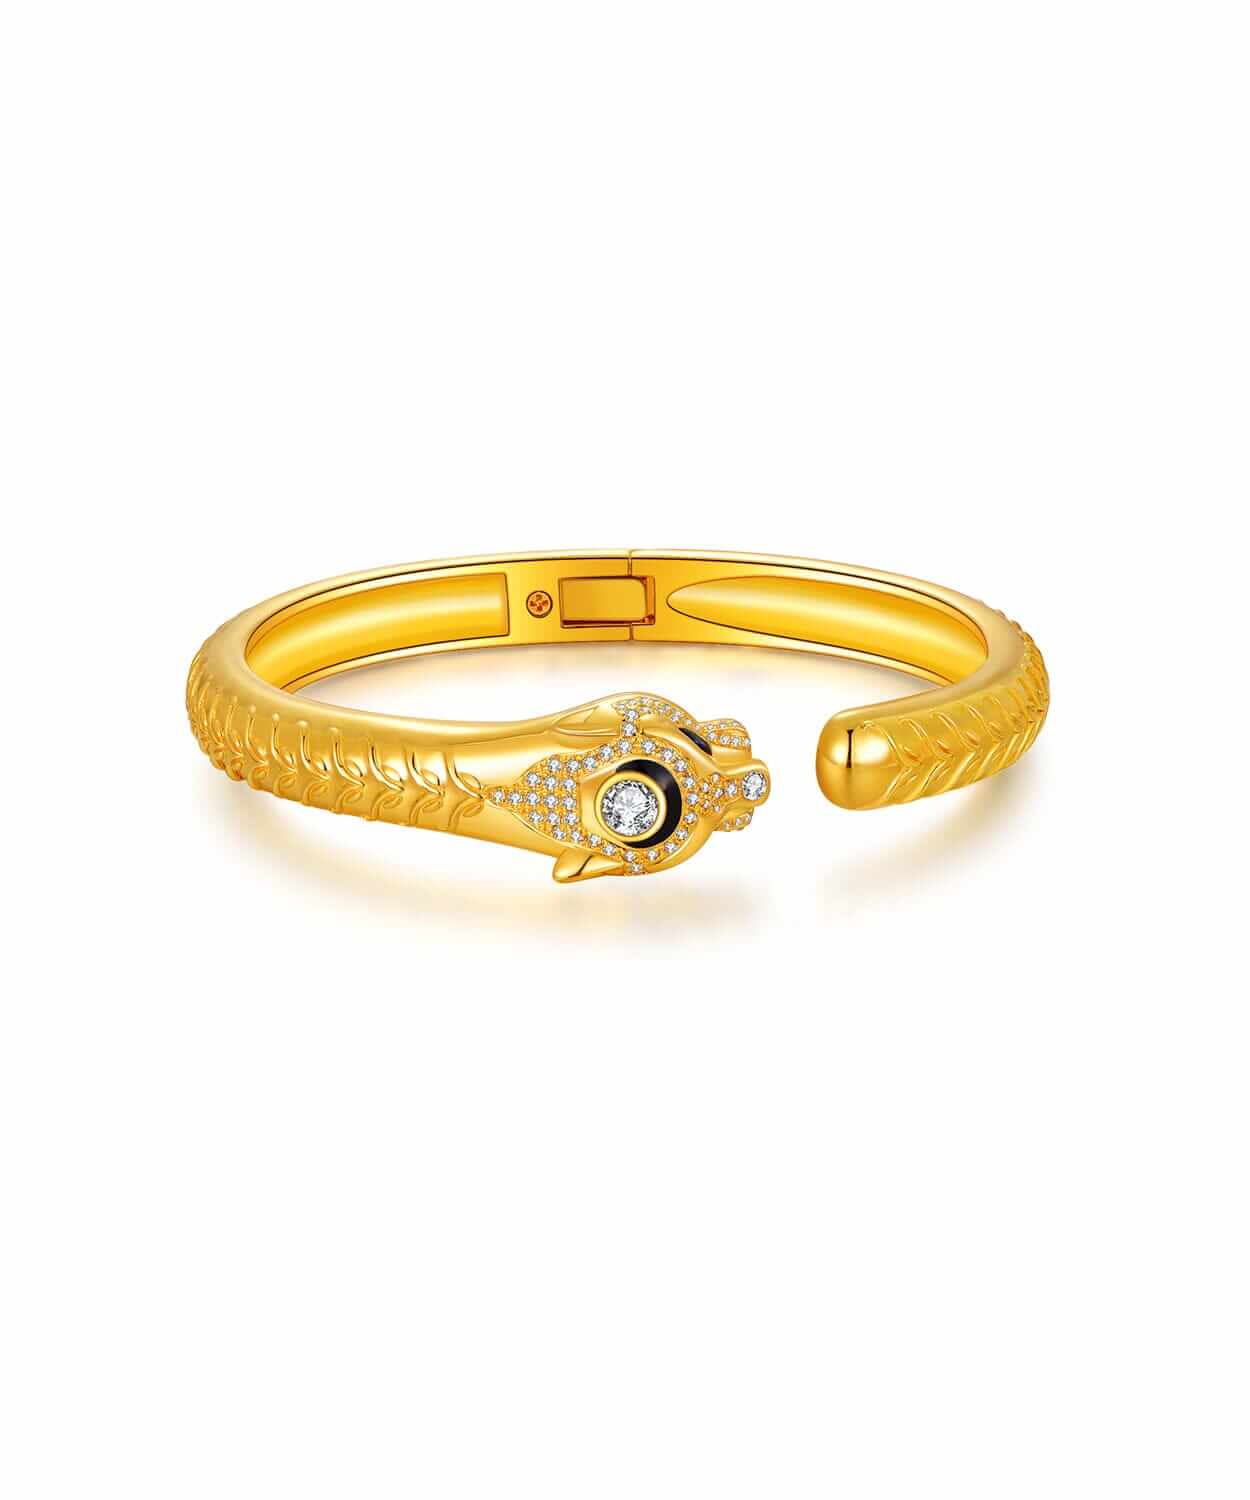 9999 24k gold cuban link Bracelet 150 Gram 8.5” | eBay